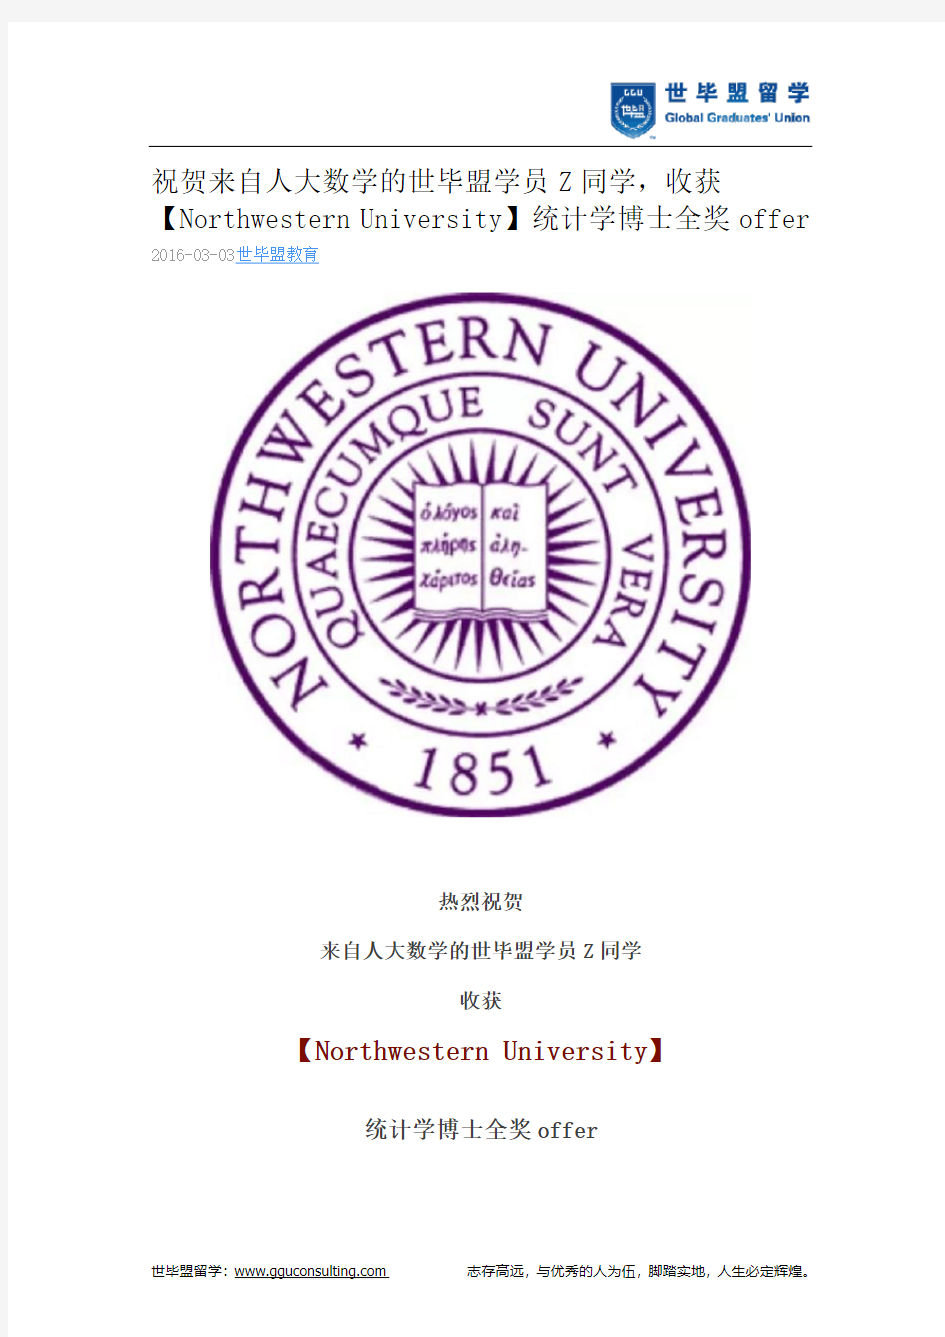 世毕盟战绩：【Northwestern University】统计学博士全奖offer